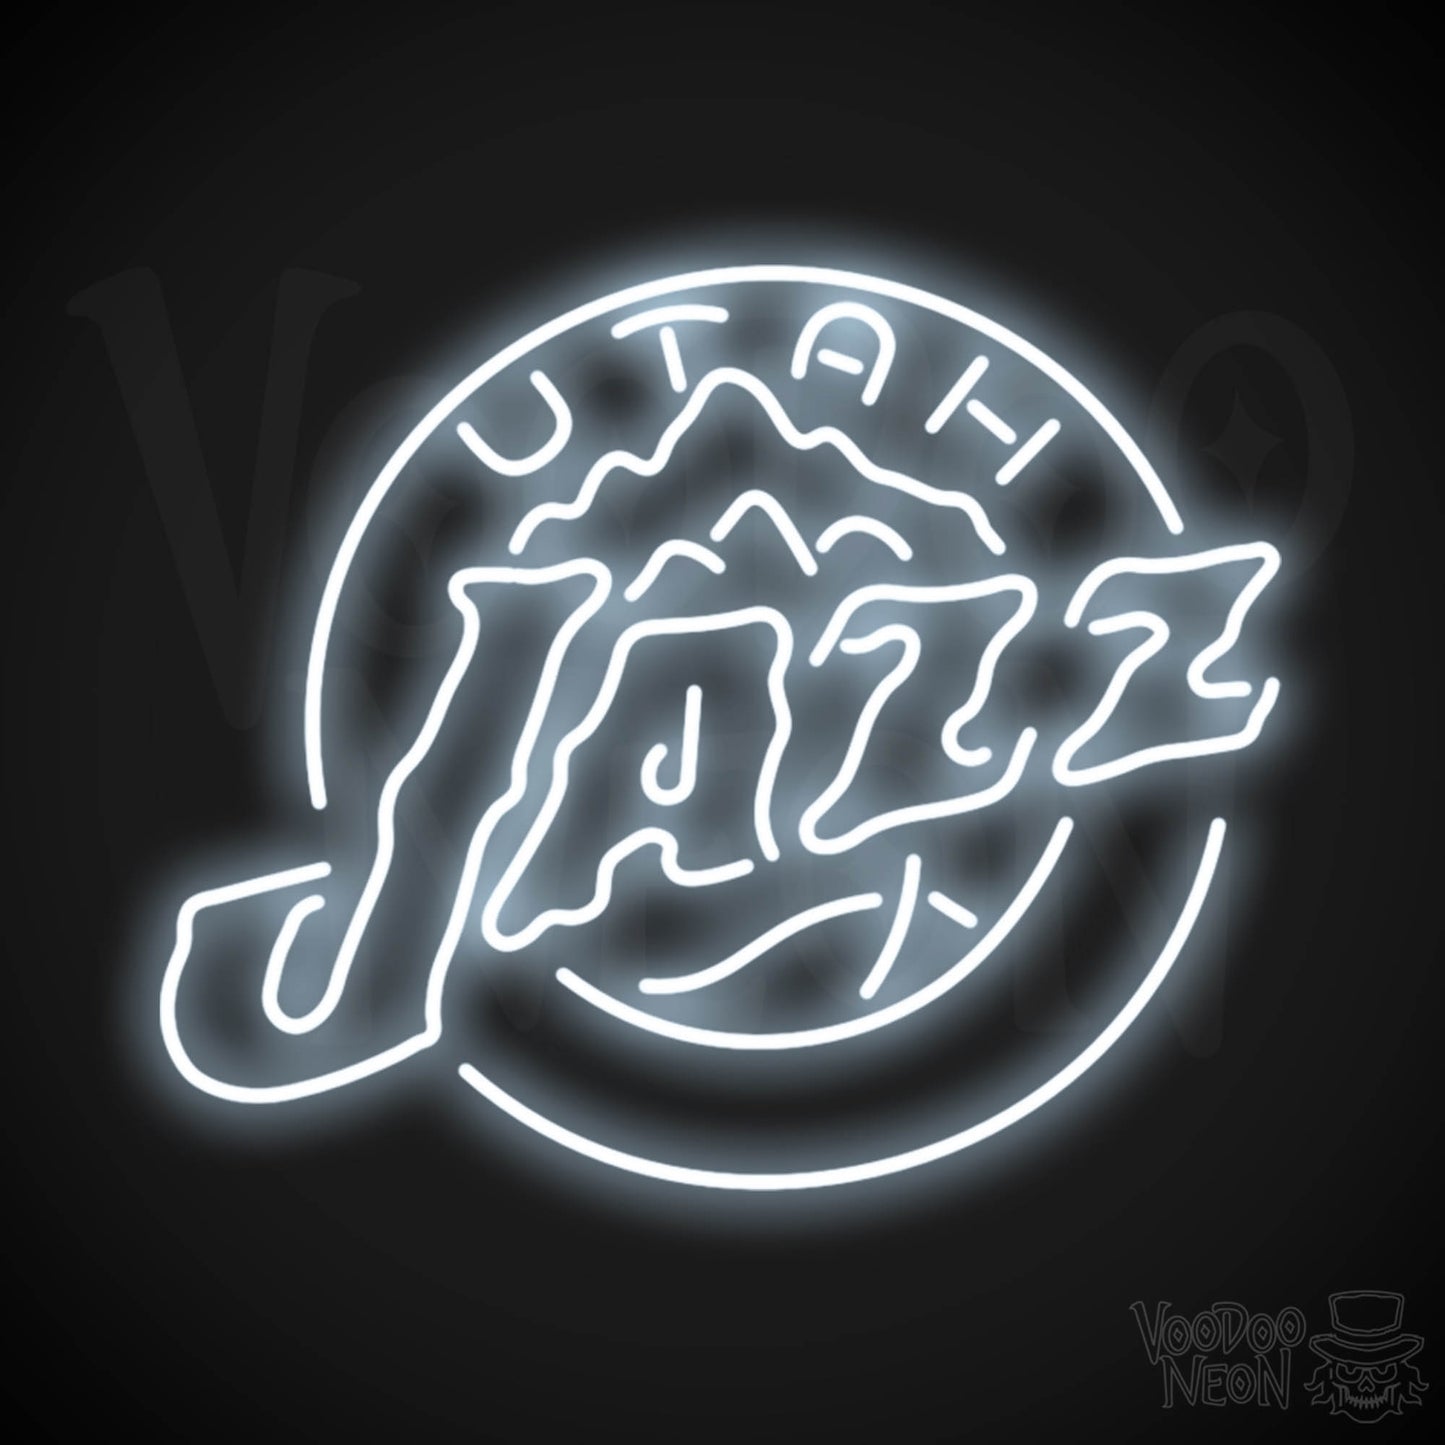 Utah Jazz Neon Sign - Utah Jazz Sign - Neon Jazz Logo Wall Art - Color Cool White